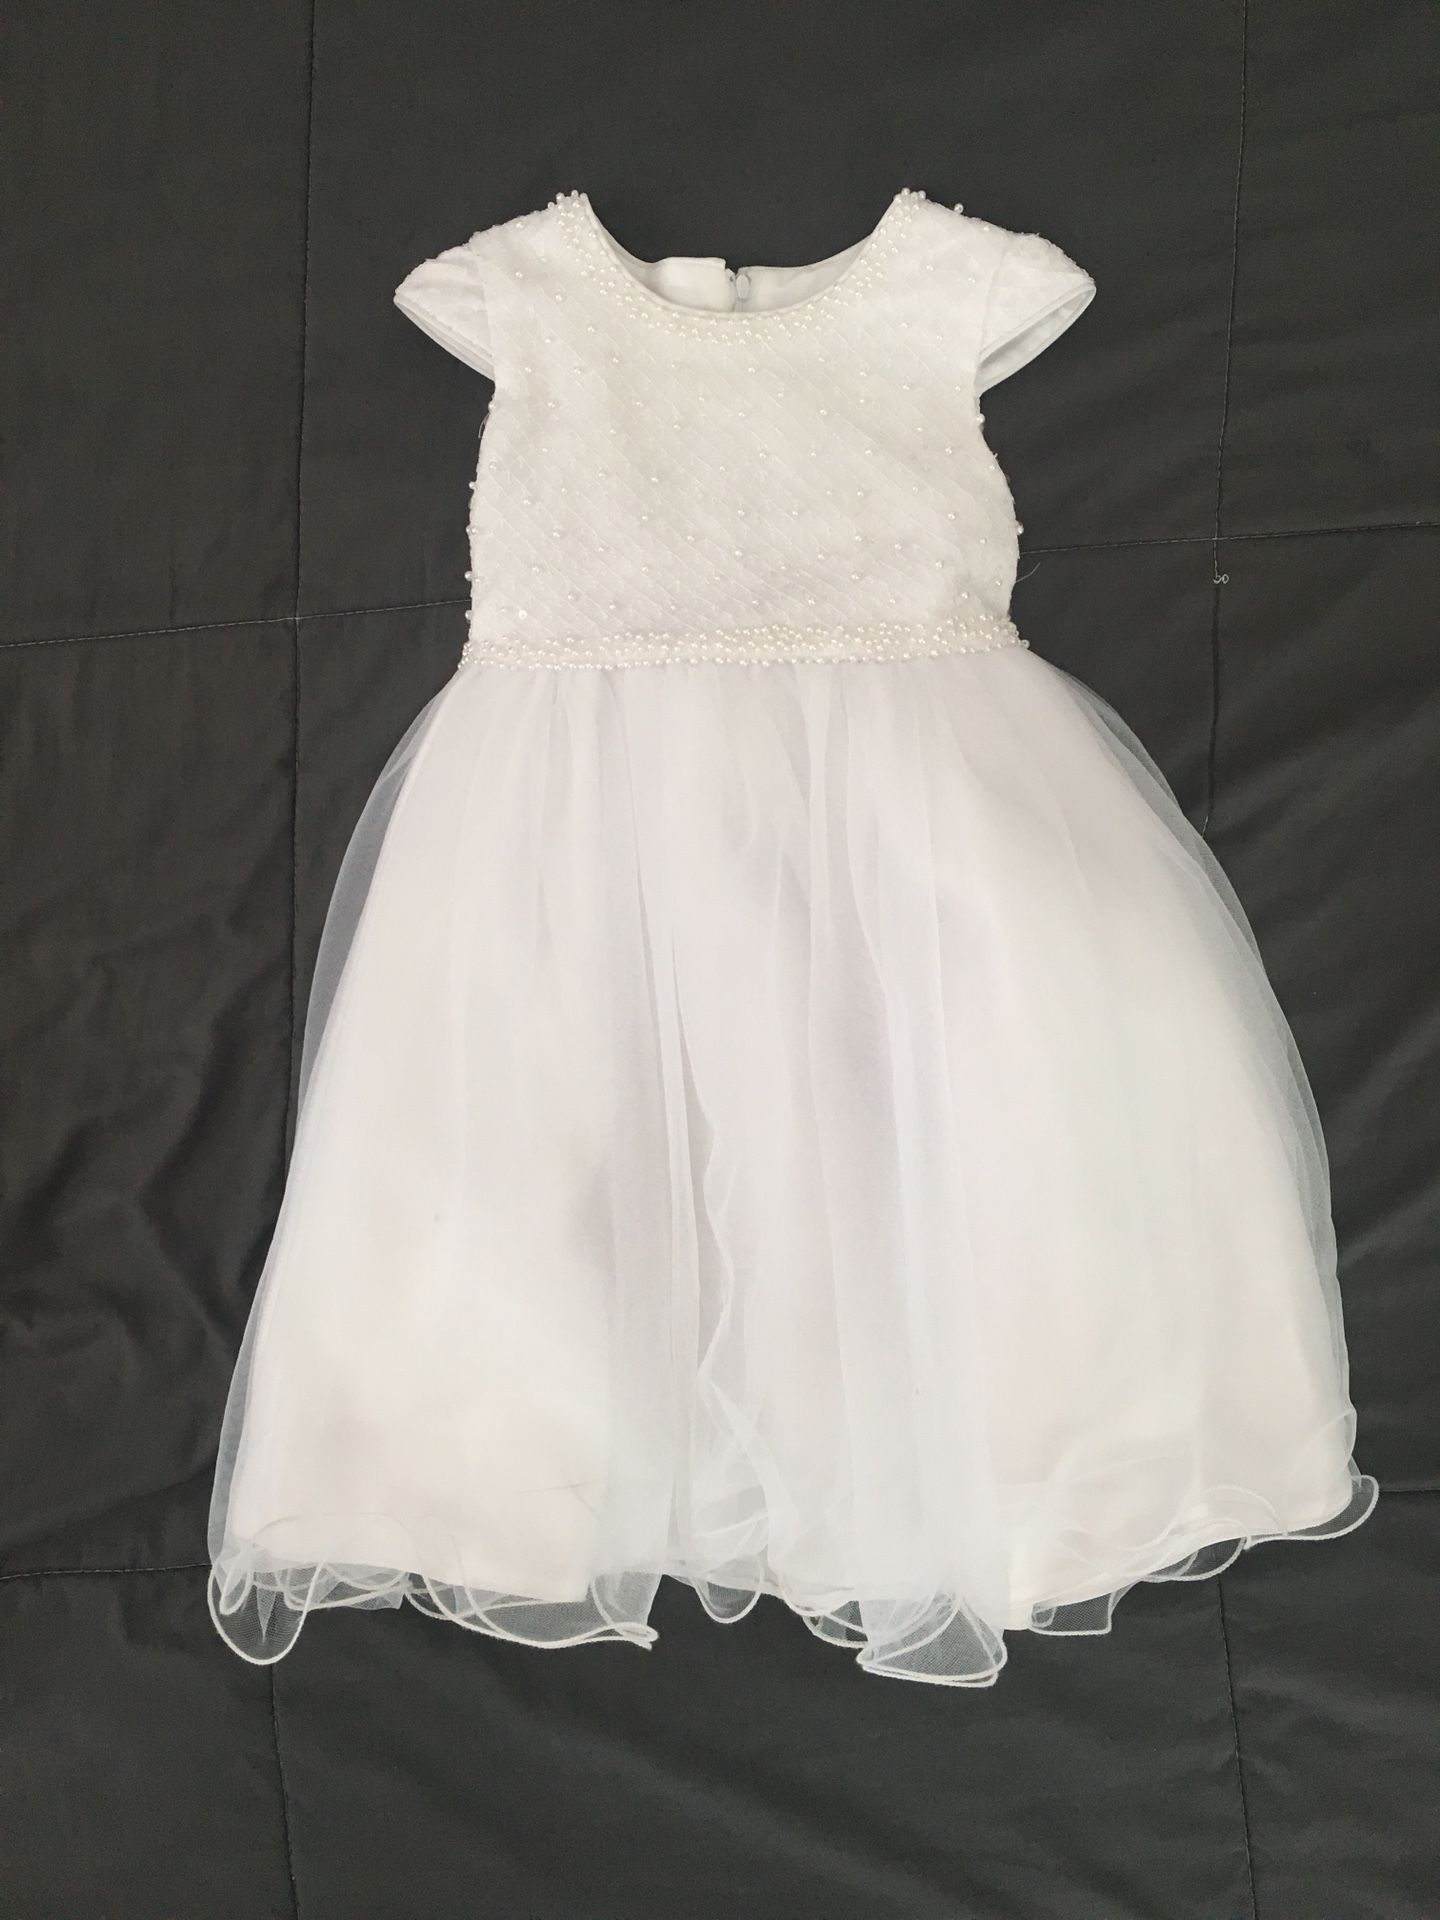 White Toddler Dress